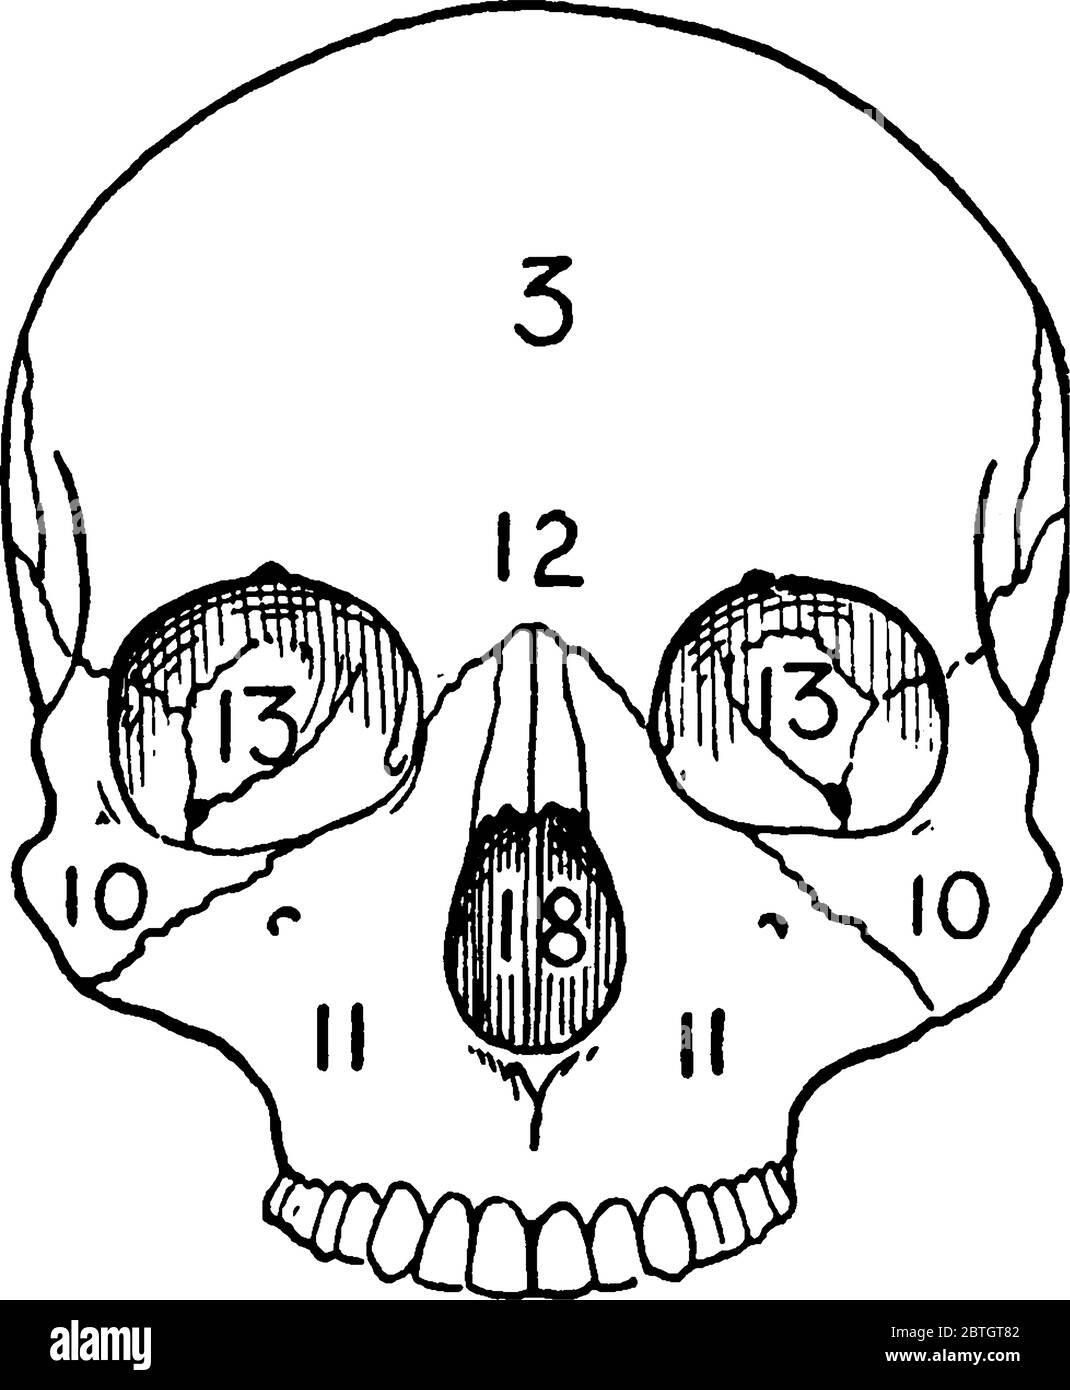 Vista frontale di un cranio adulto, una struttura ossea che funge da cavità protettiva per il cervello con le sue parti etichettate, disegno di linea vintage o e. Illustrazione Vettoriale